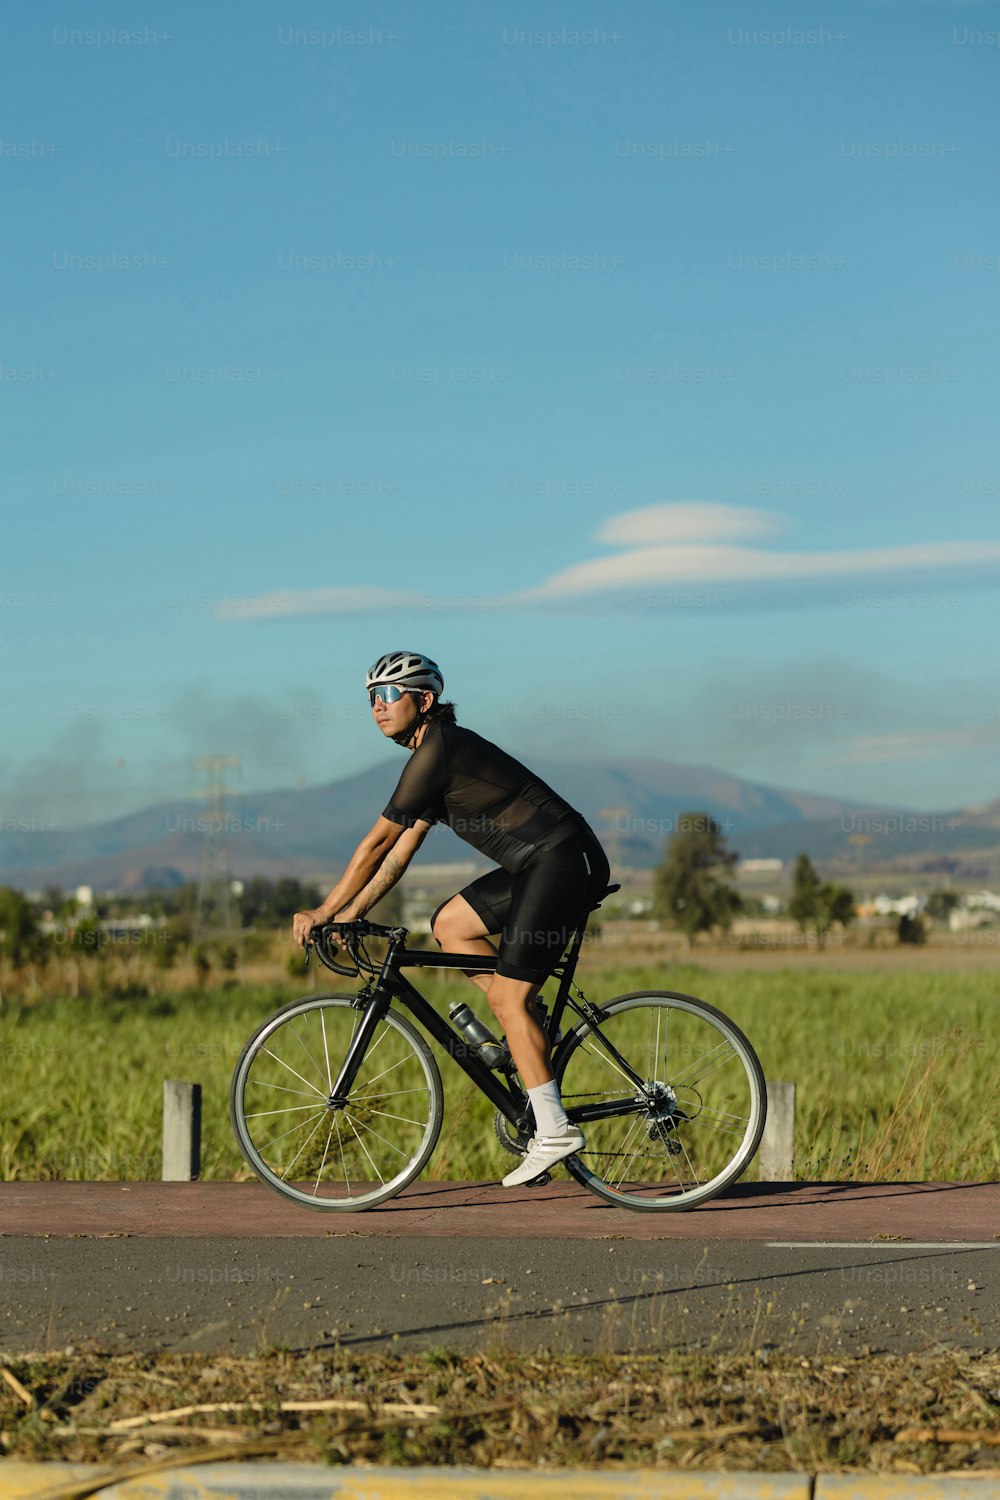 Foto Un hombre montando en bicicleta por una carretera – Bicicleta KTM  Imagen en Unsplash